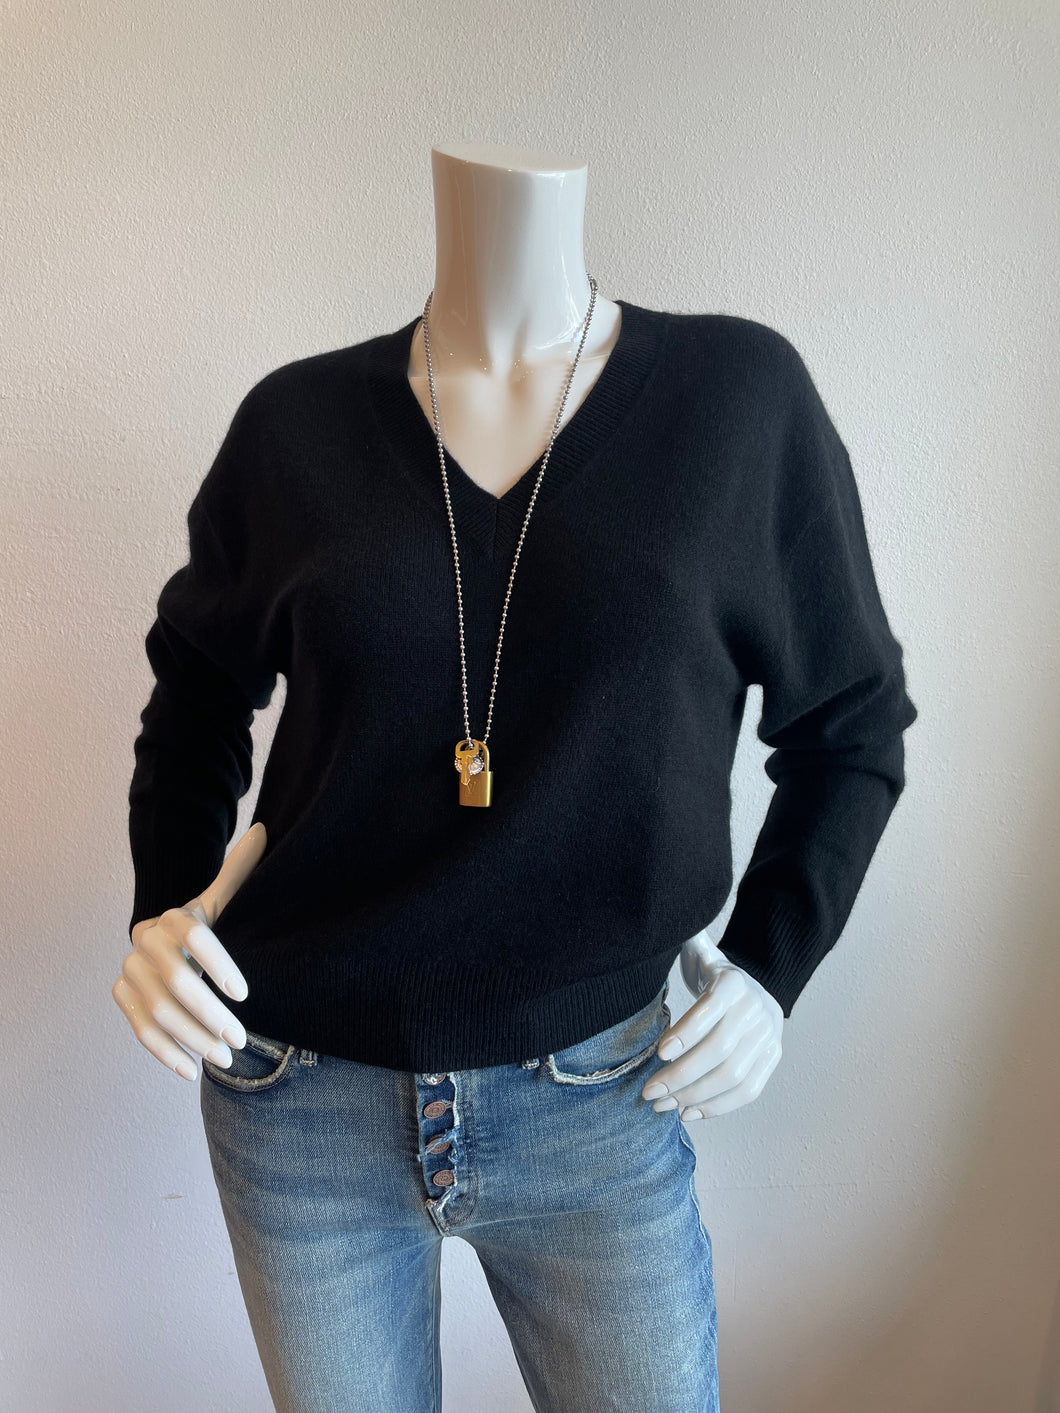 CRUSH - Malibu Jumper Sweater - Black